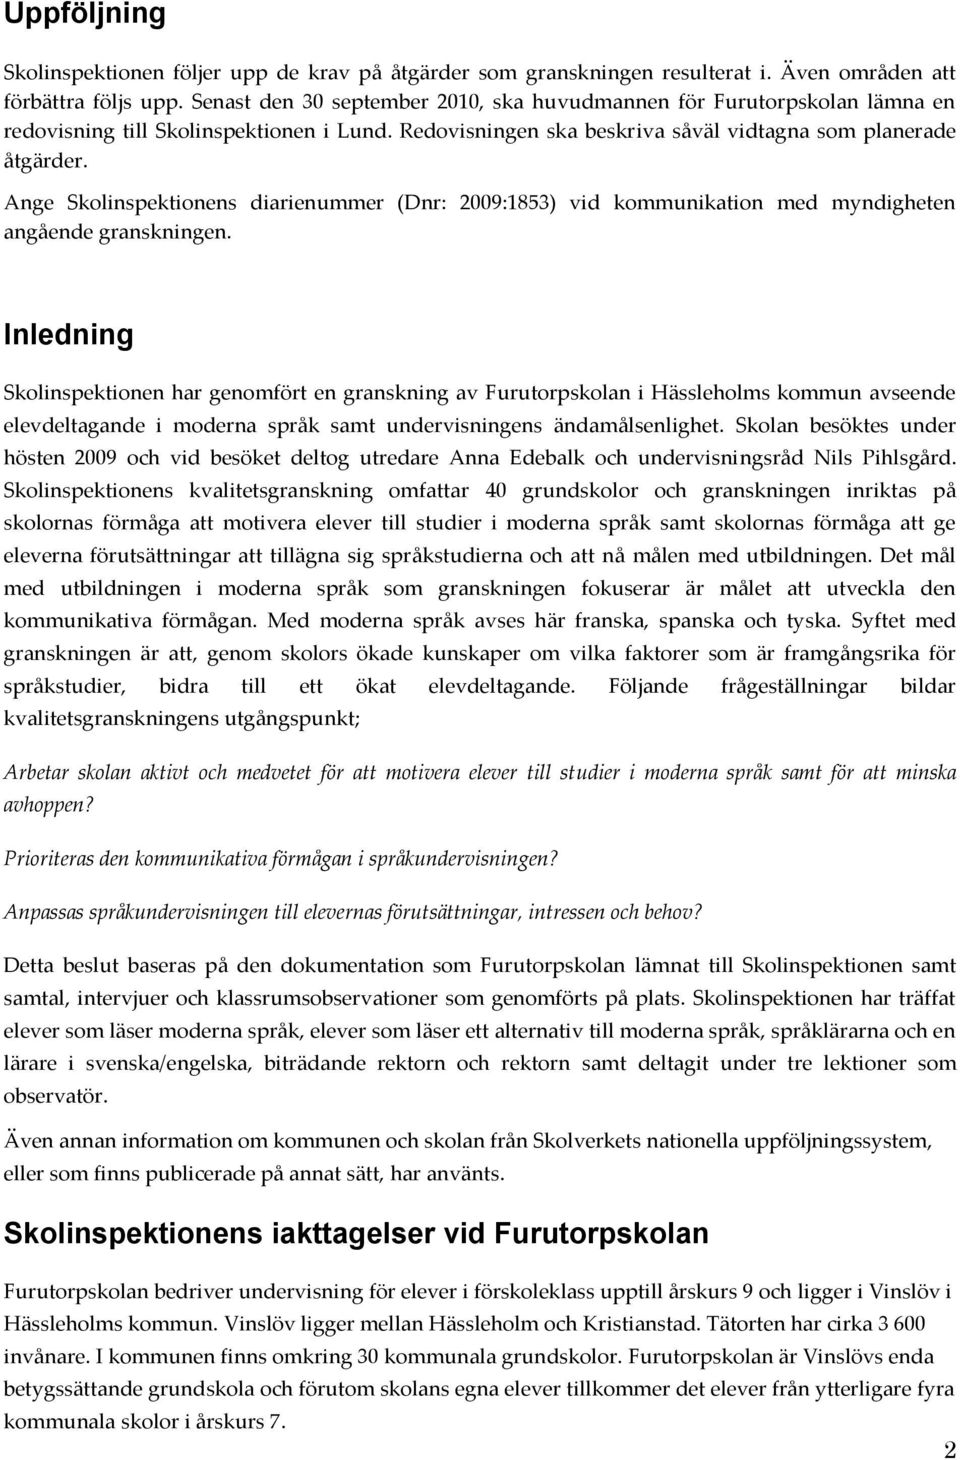 Ange Skolinspektionens diarienummer (Dnr: 2009:1853) vid kommunikation med myndigheten angående granskningen.